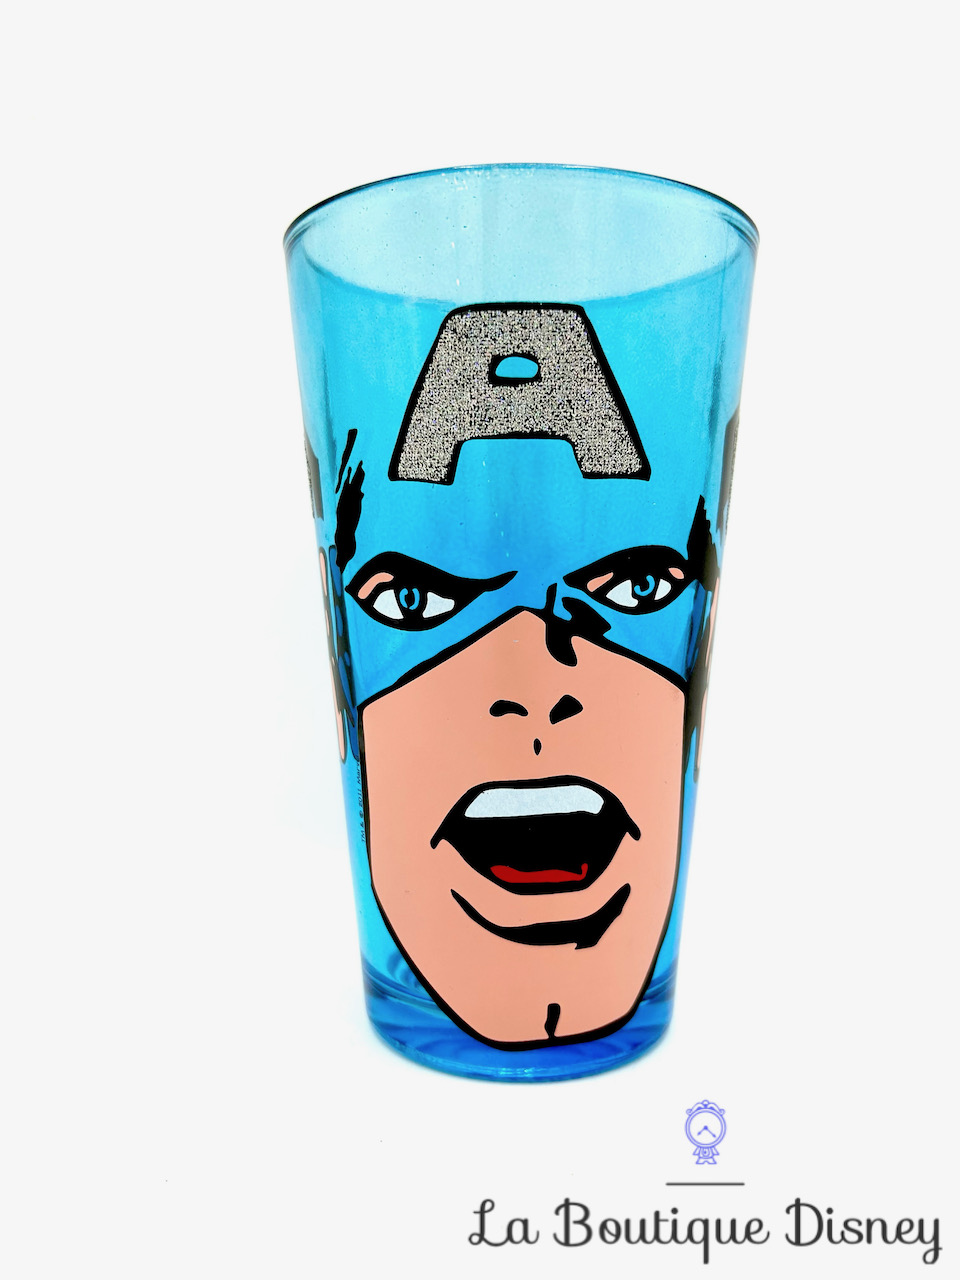 Verre Captain America Marvel 2011 Steve Rogers Avengers bleu